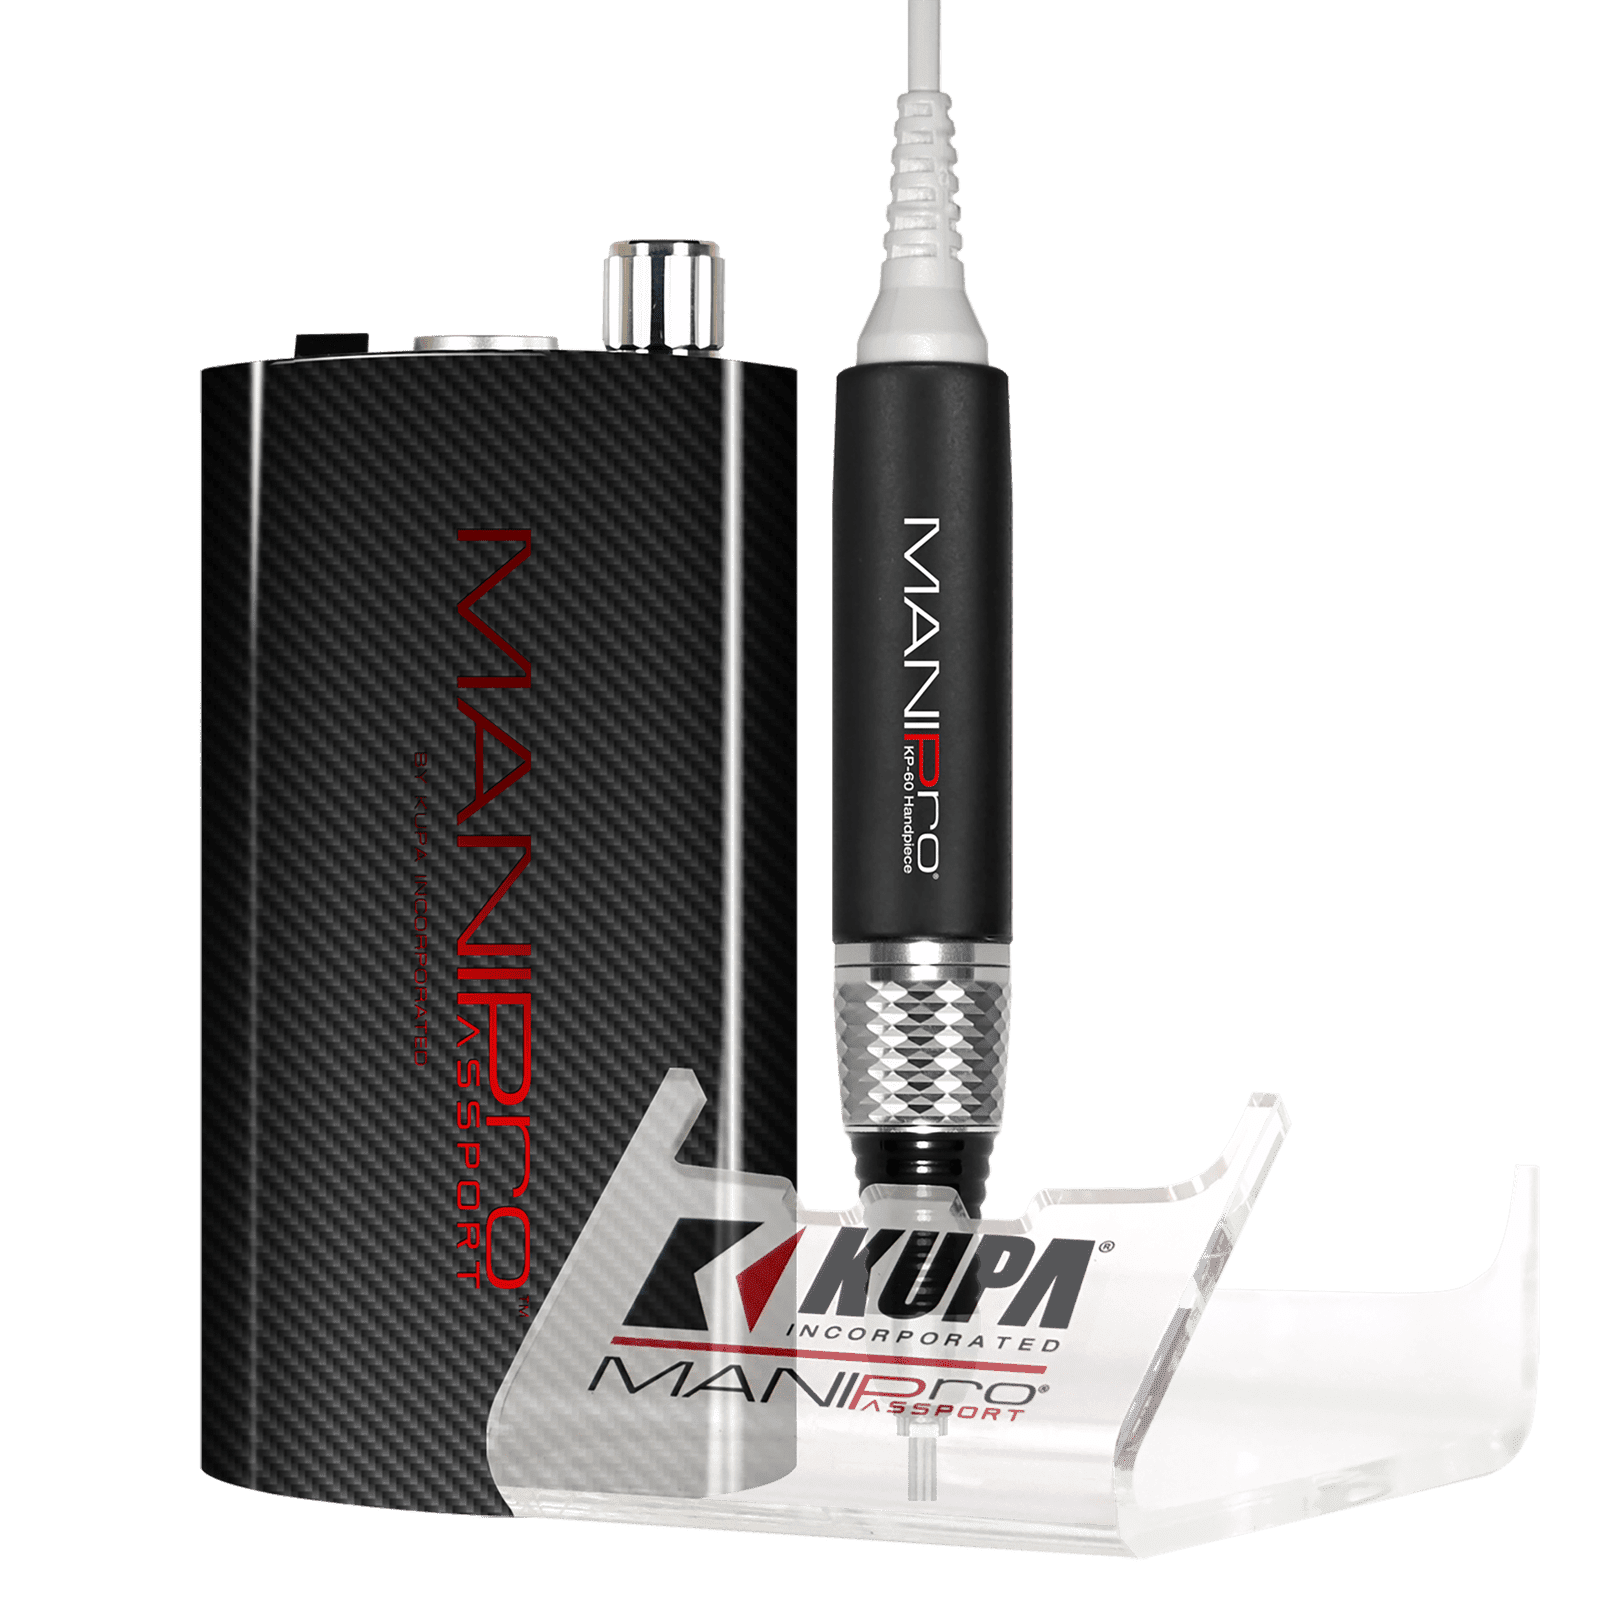 Kupa ManiPro Passport Nail Drill - Professional Electric Nail File | KP-60 - Charcoal